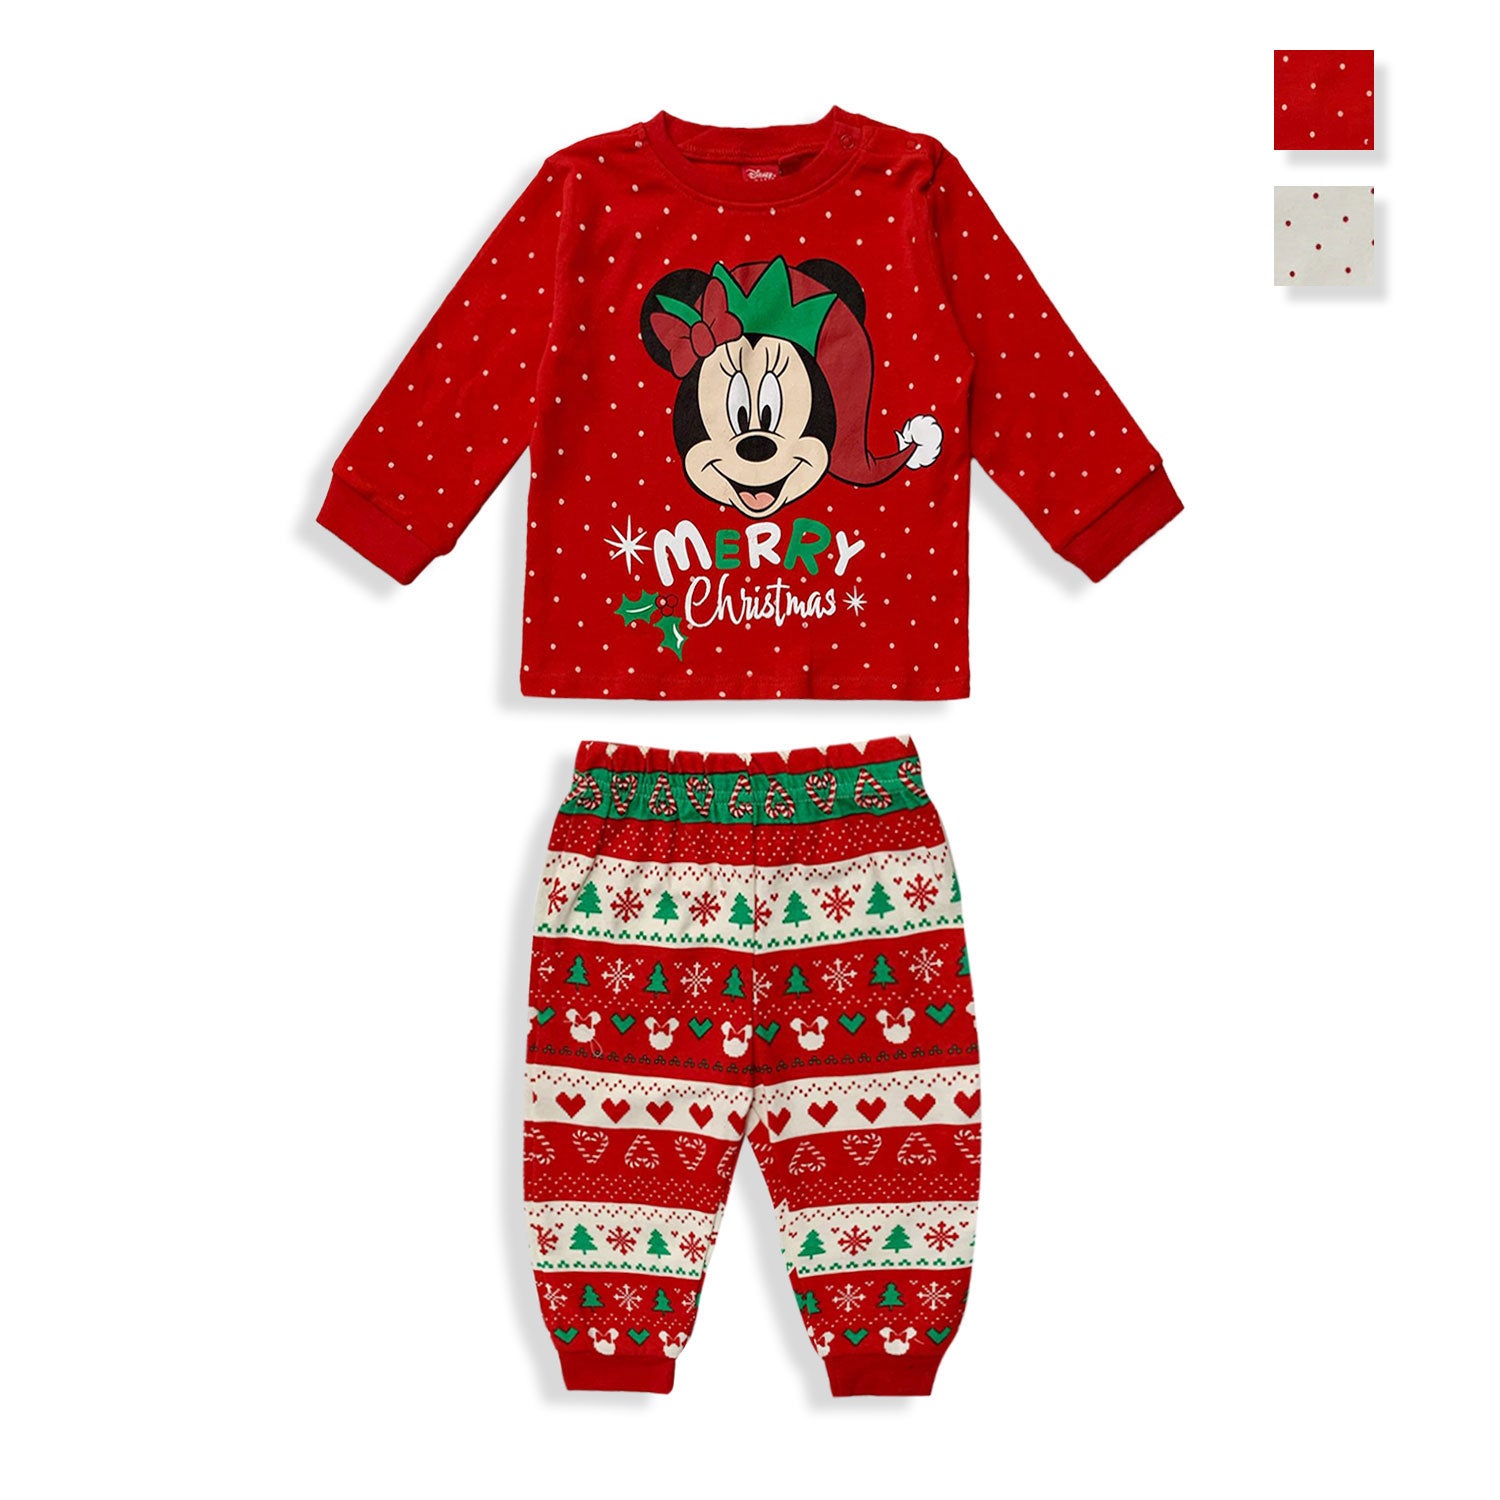 Pigiama natalizio Disney Minnie Mouse lungo neonato bimba in cotone Natale 5529